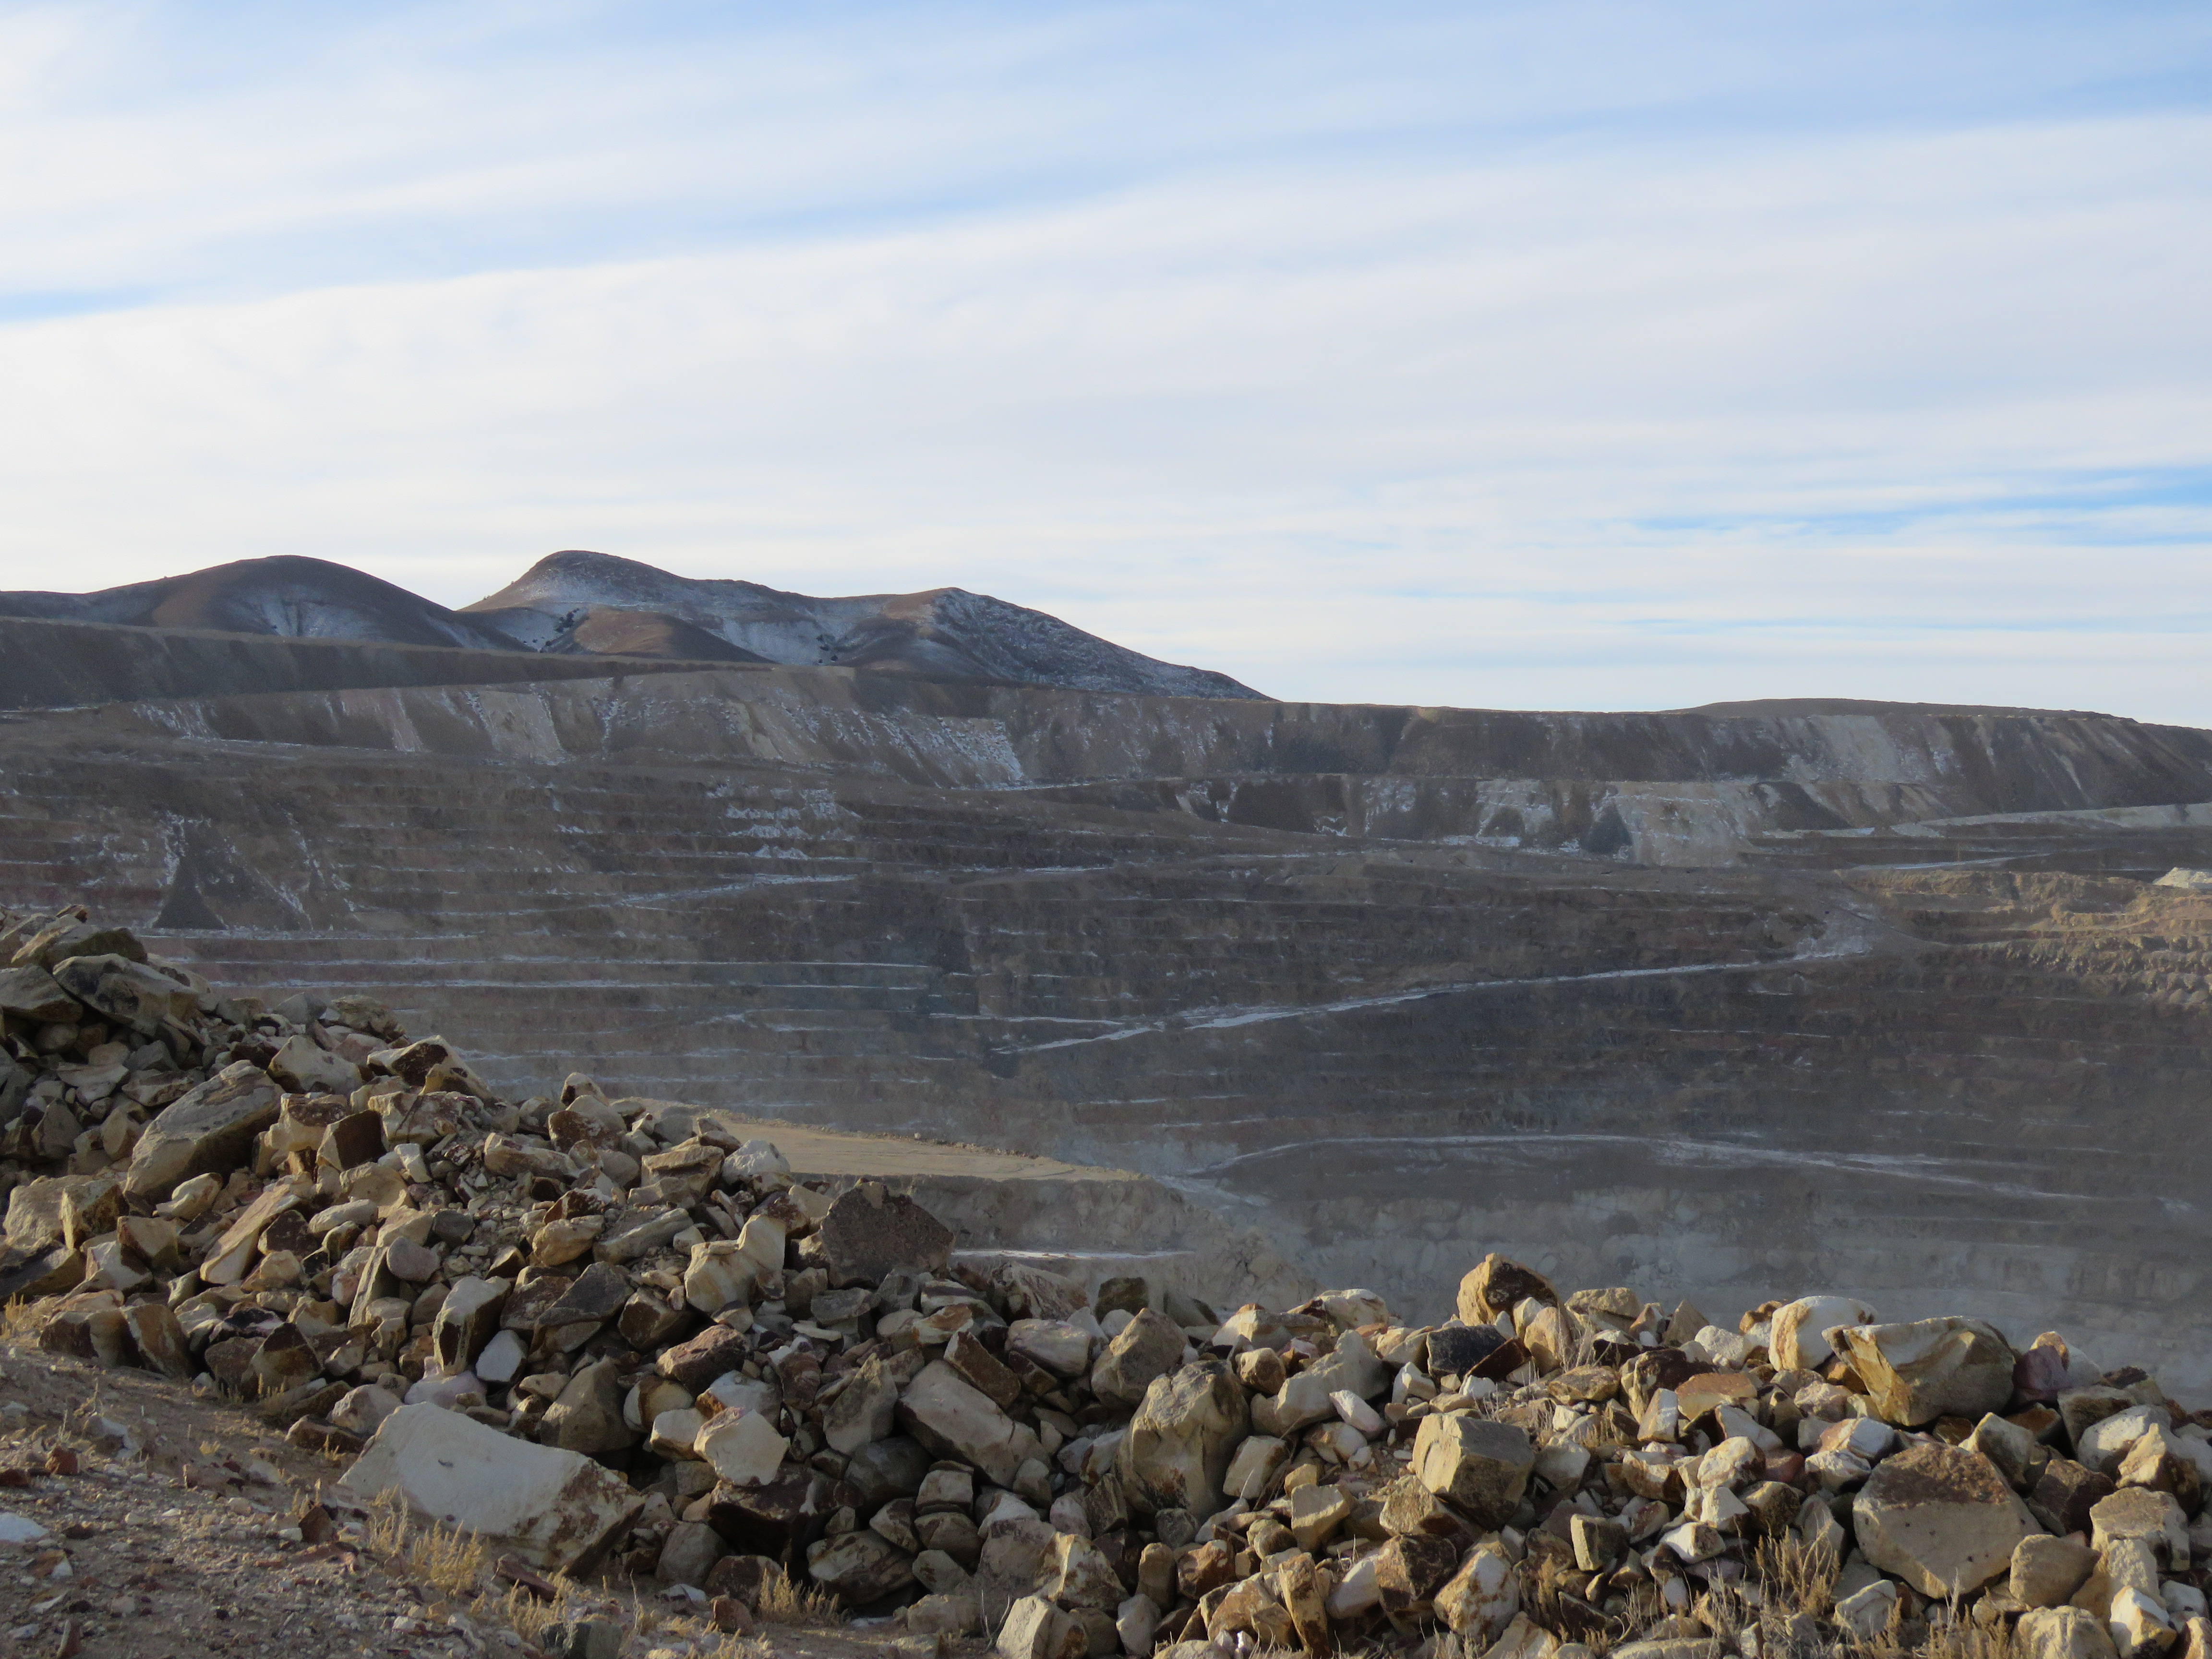 La mina de oro Round Mountain se encuentra a 6,800 pies de altura y está ubicada a 55 millas al norte de Tonopah, Nevada. Kinross Gold Corporation, una empresa minera con sede en Toronto, adquirió la propiedad total de la mina de manos de Barrick Gold Corporation en 2016.